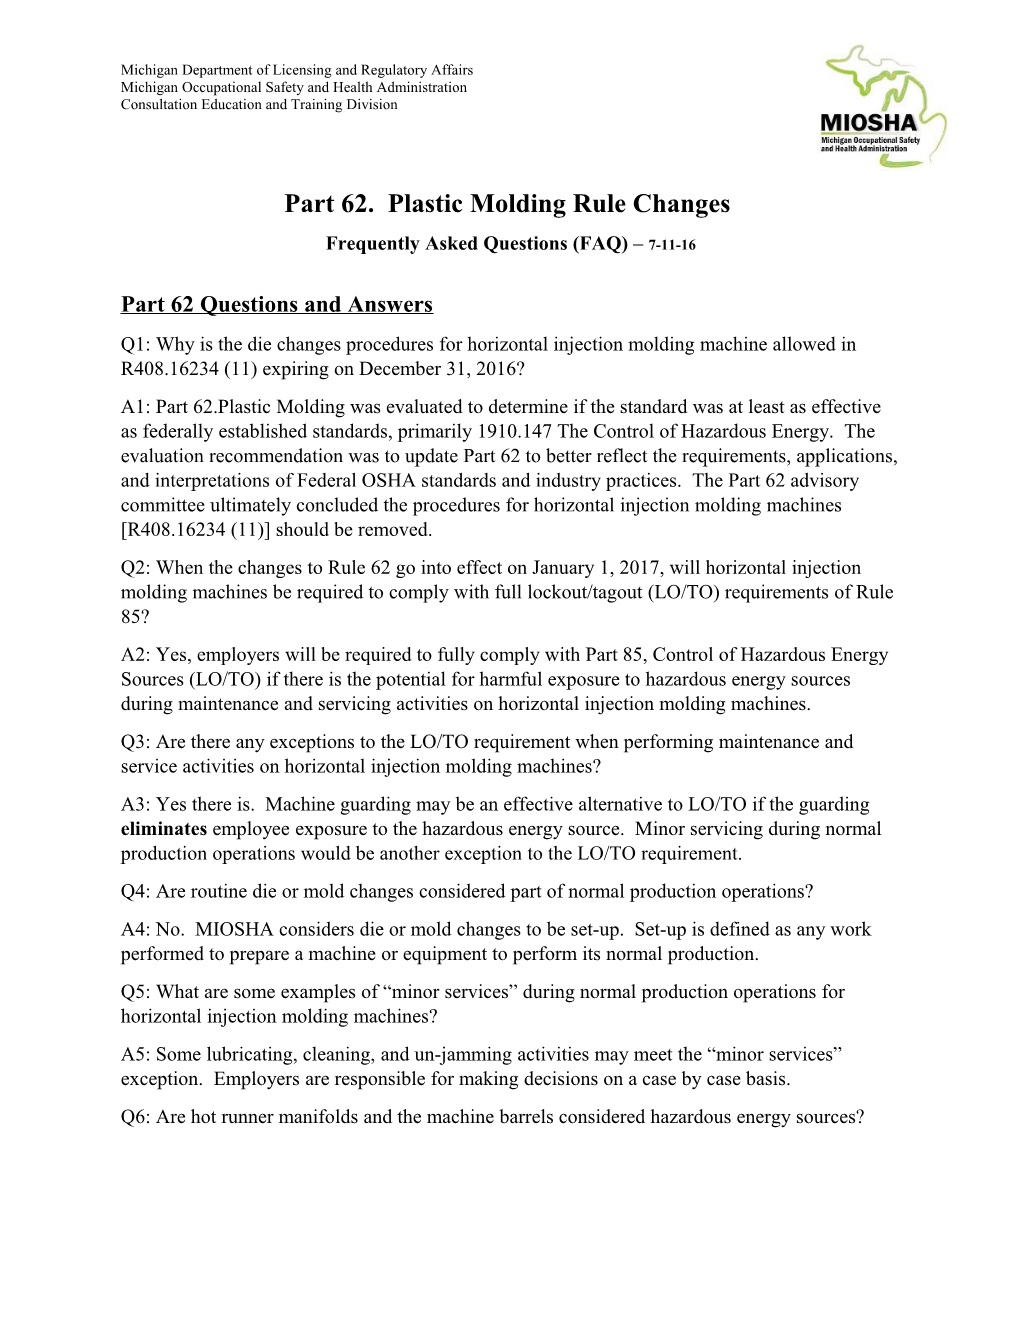 Part 62. Plastic Molding Rule Changes